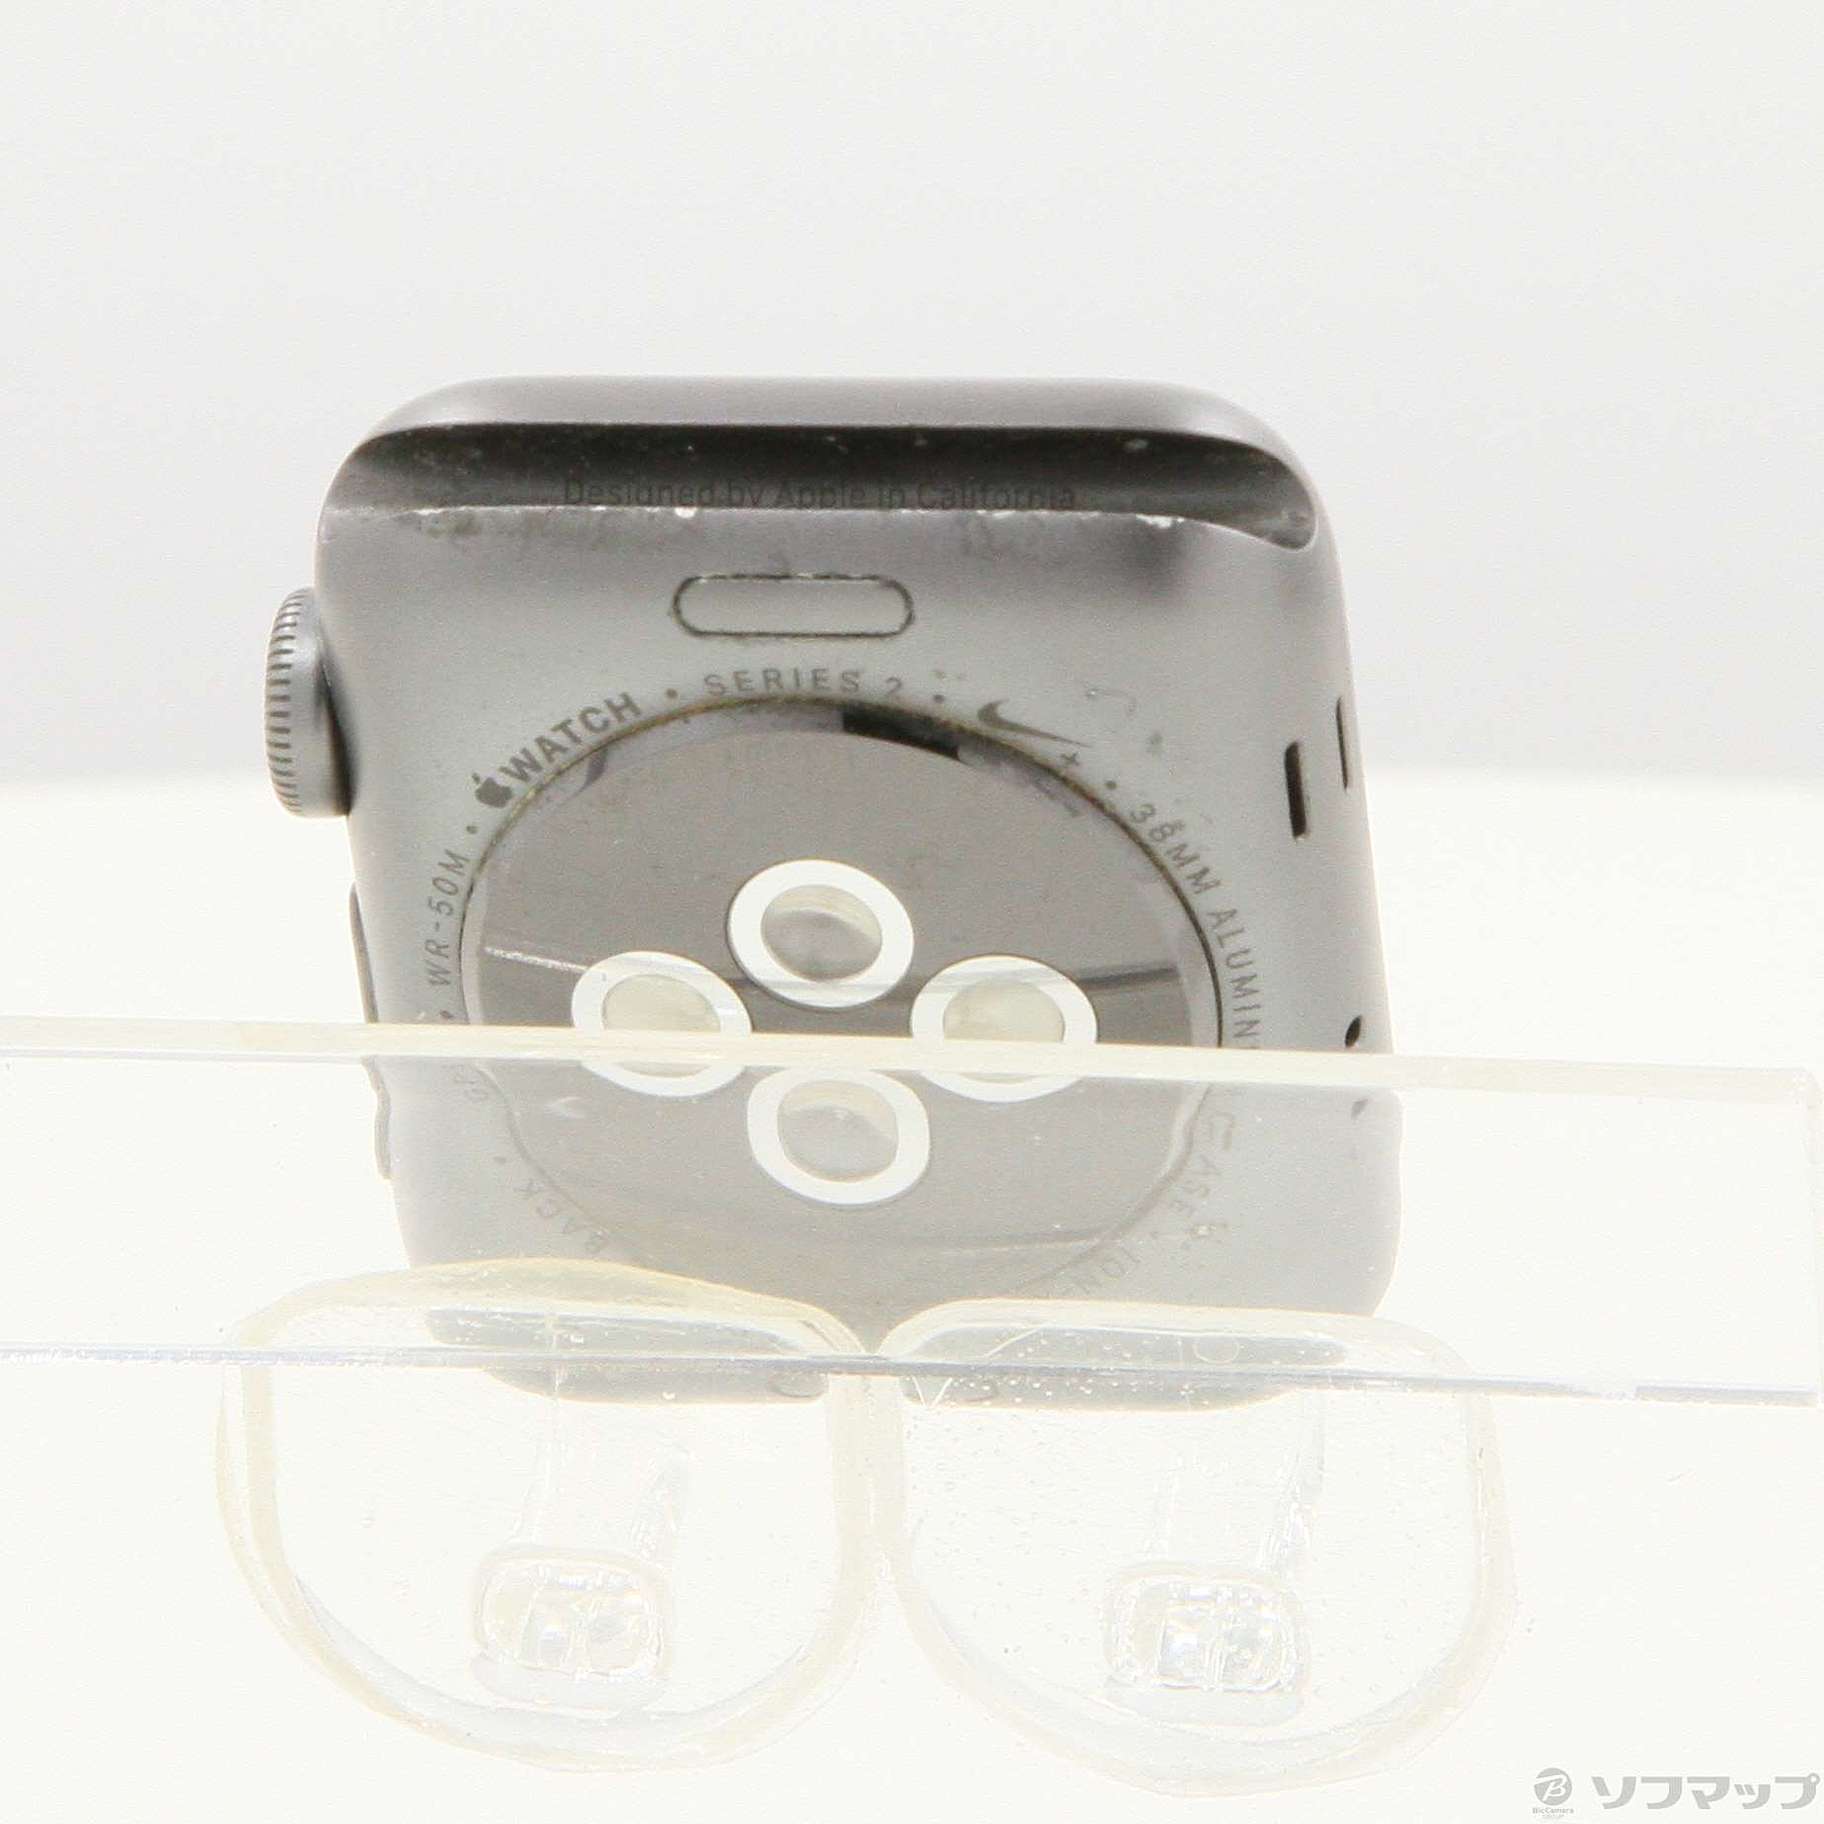 中古】Apple Watch Series 2 Nike+ 38mm スペースグレイアルミニウム